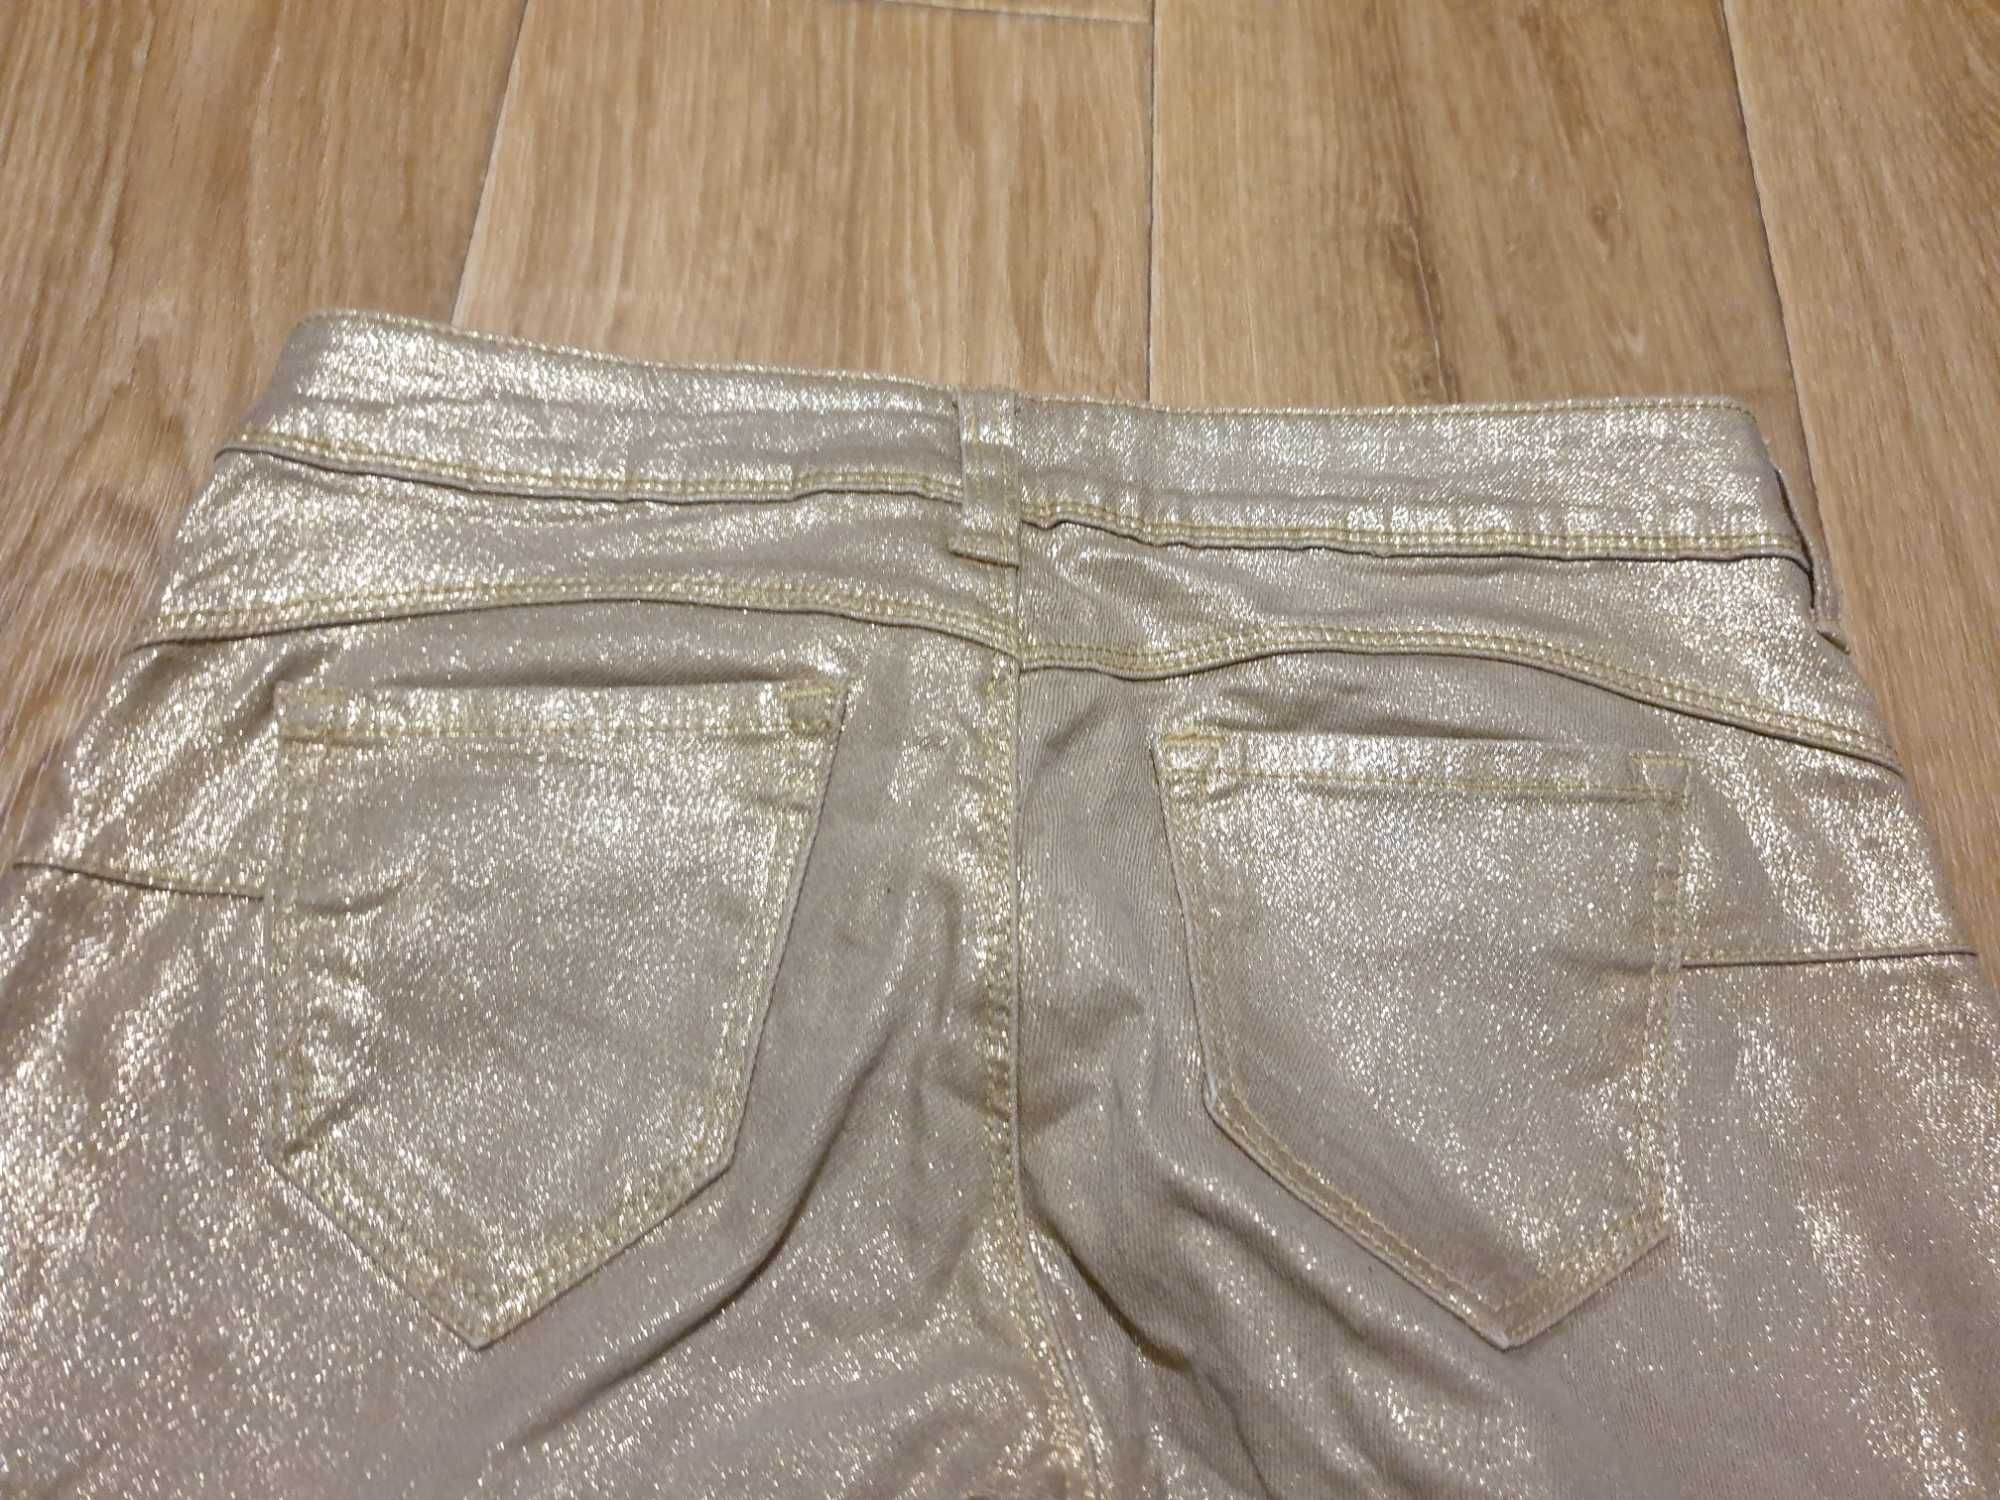 Джинсы золотые, джинсы бежевые с золотым, размер 26